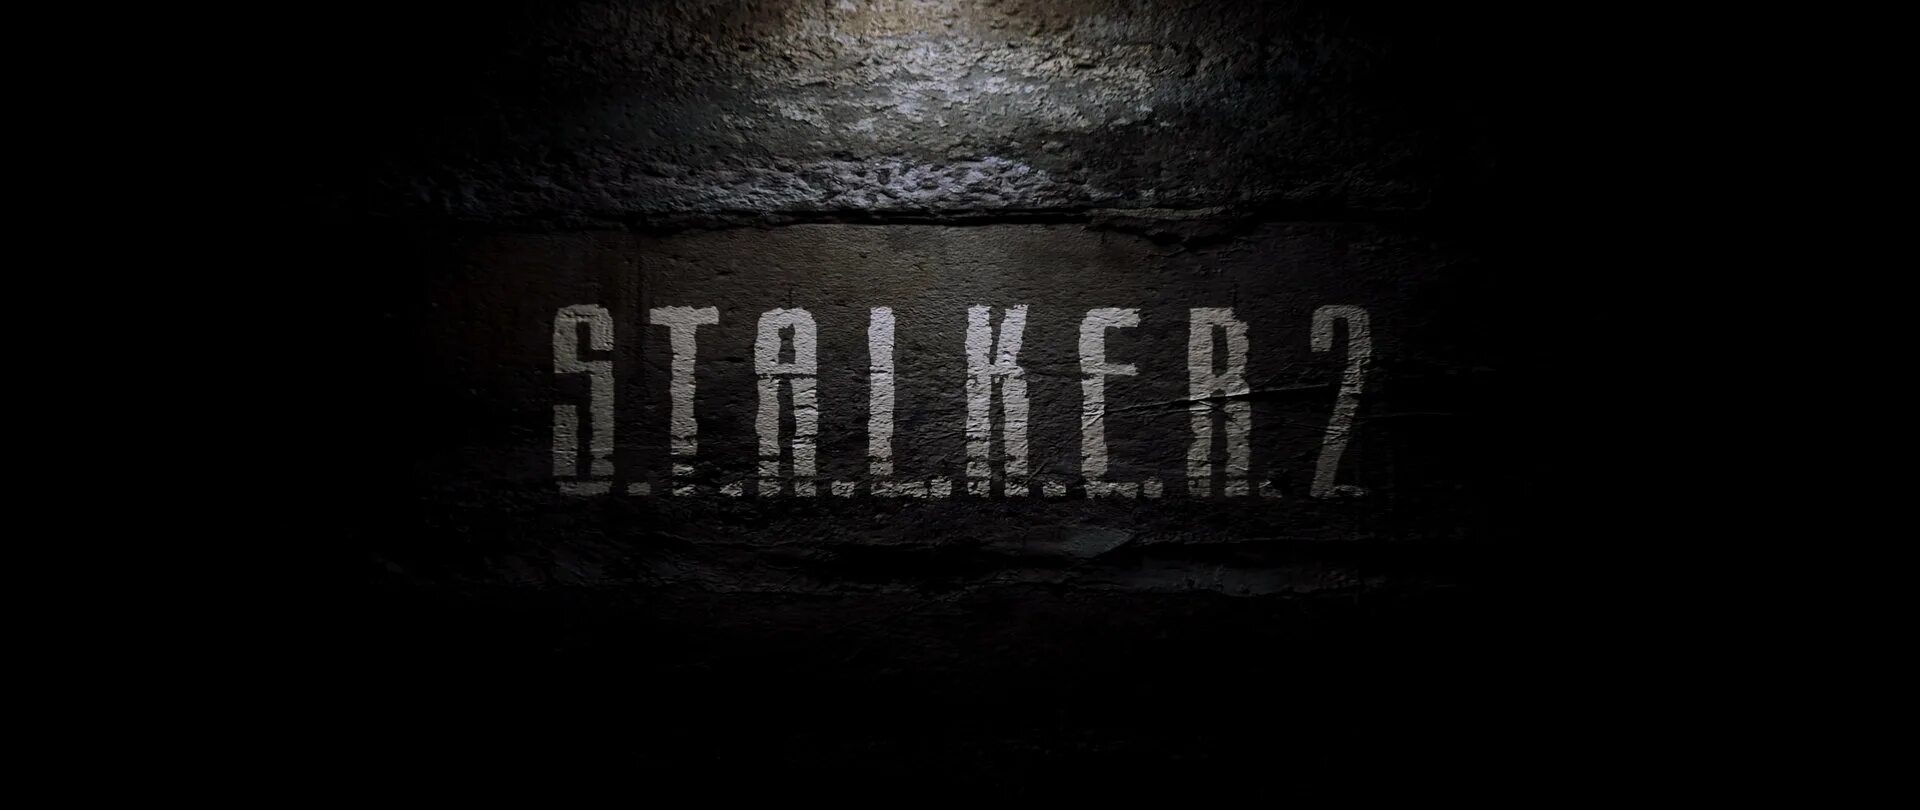 Игра сталкер 2.0. Сталкер 2 обложка. S.T.A.L.K.E.R. 2: сердце Чернобыля. Сталкер 2 Харт оф Чернобыль.